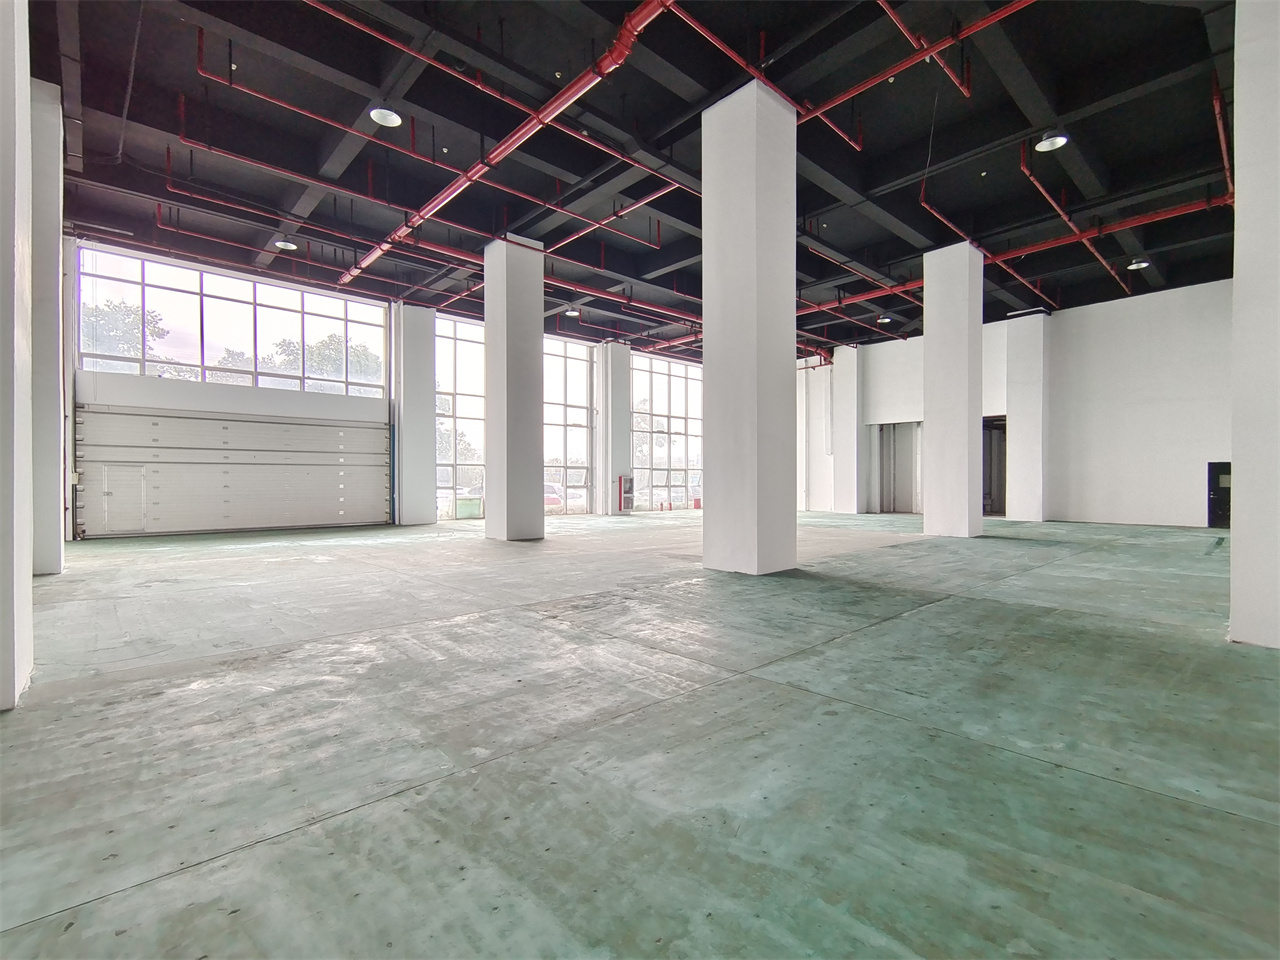 浦东芯片组装生产基地一楼场地招租层高9米